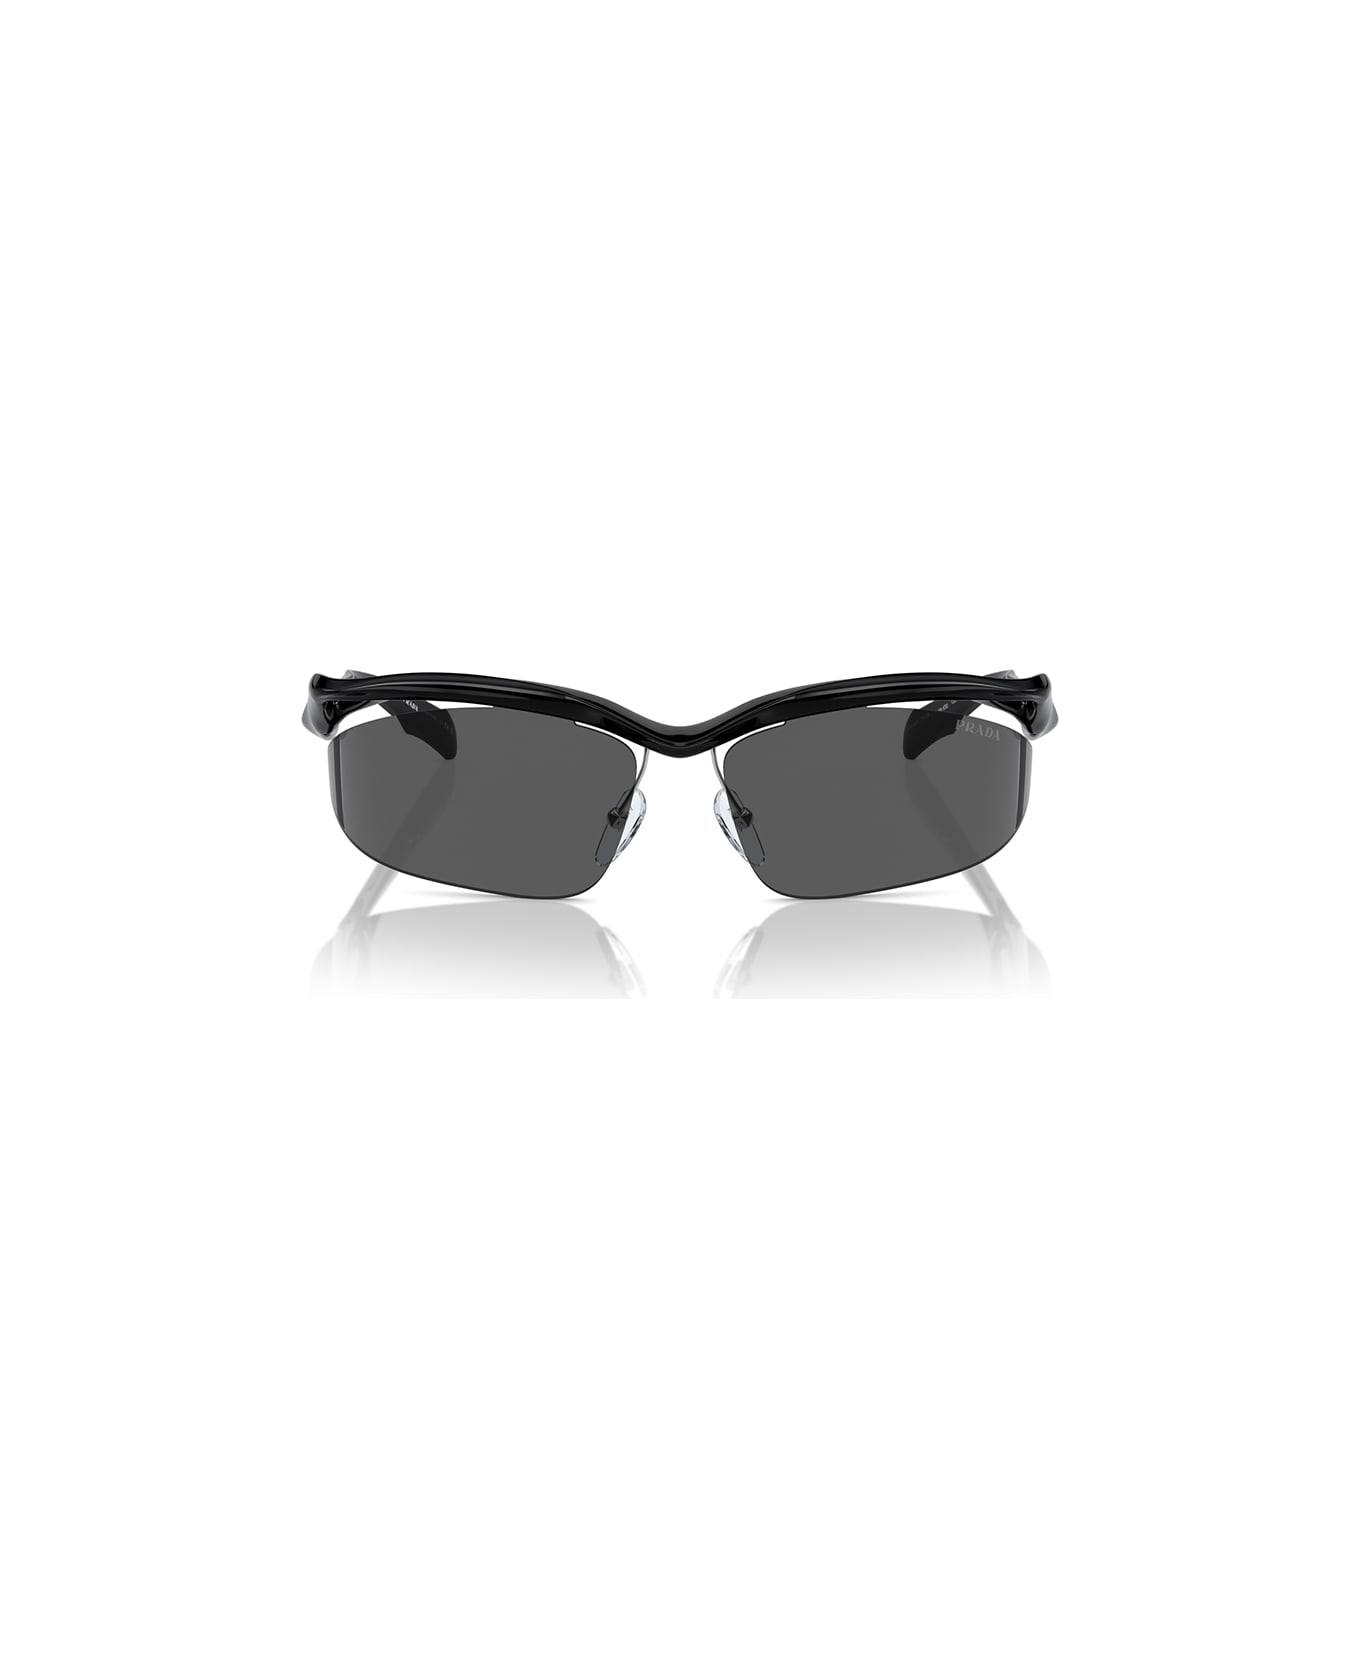 Prada Eyewear Sunglasses - Nero/Nero サングラス